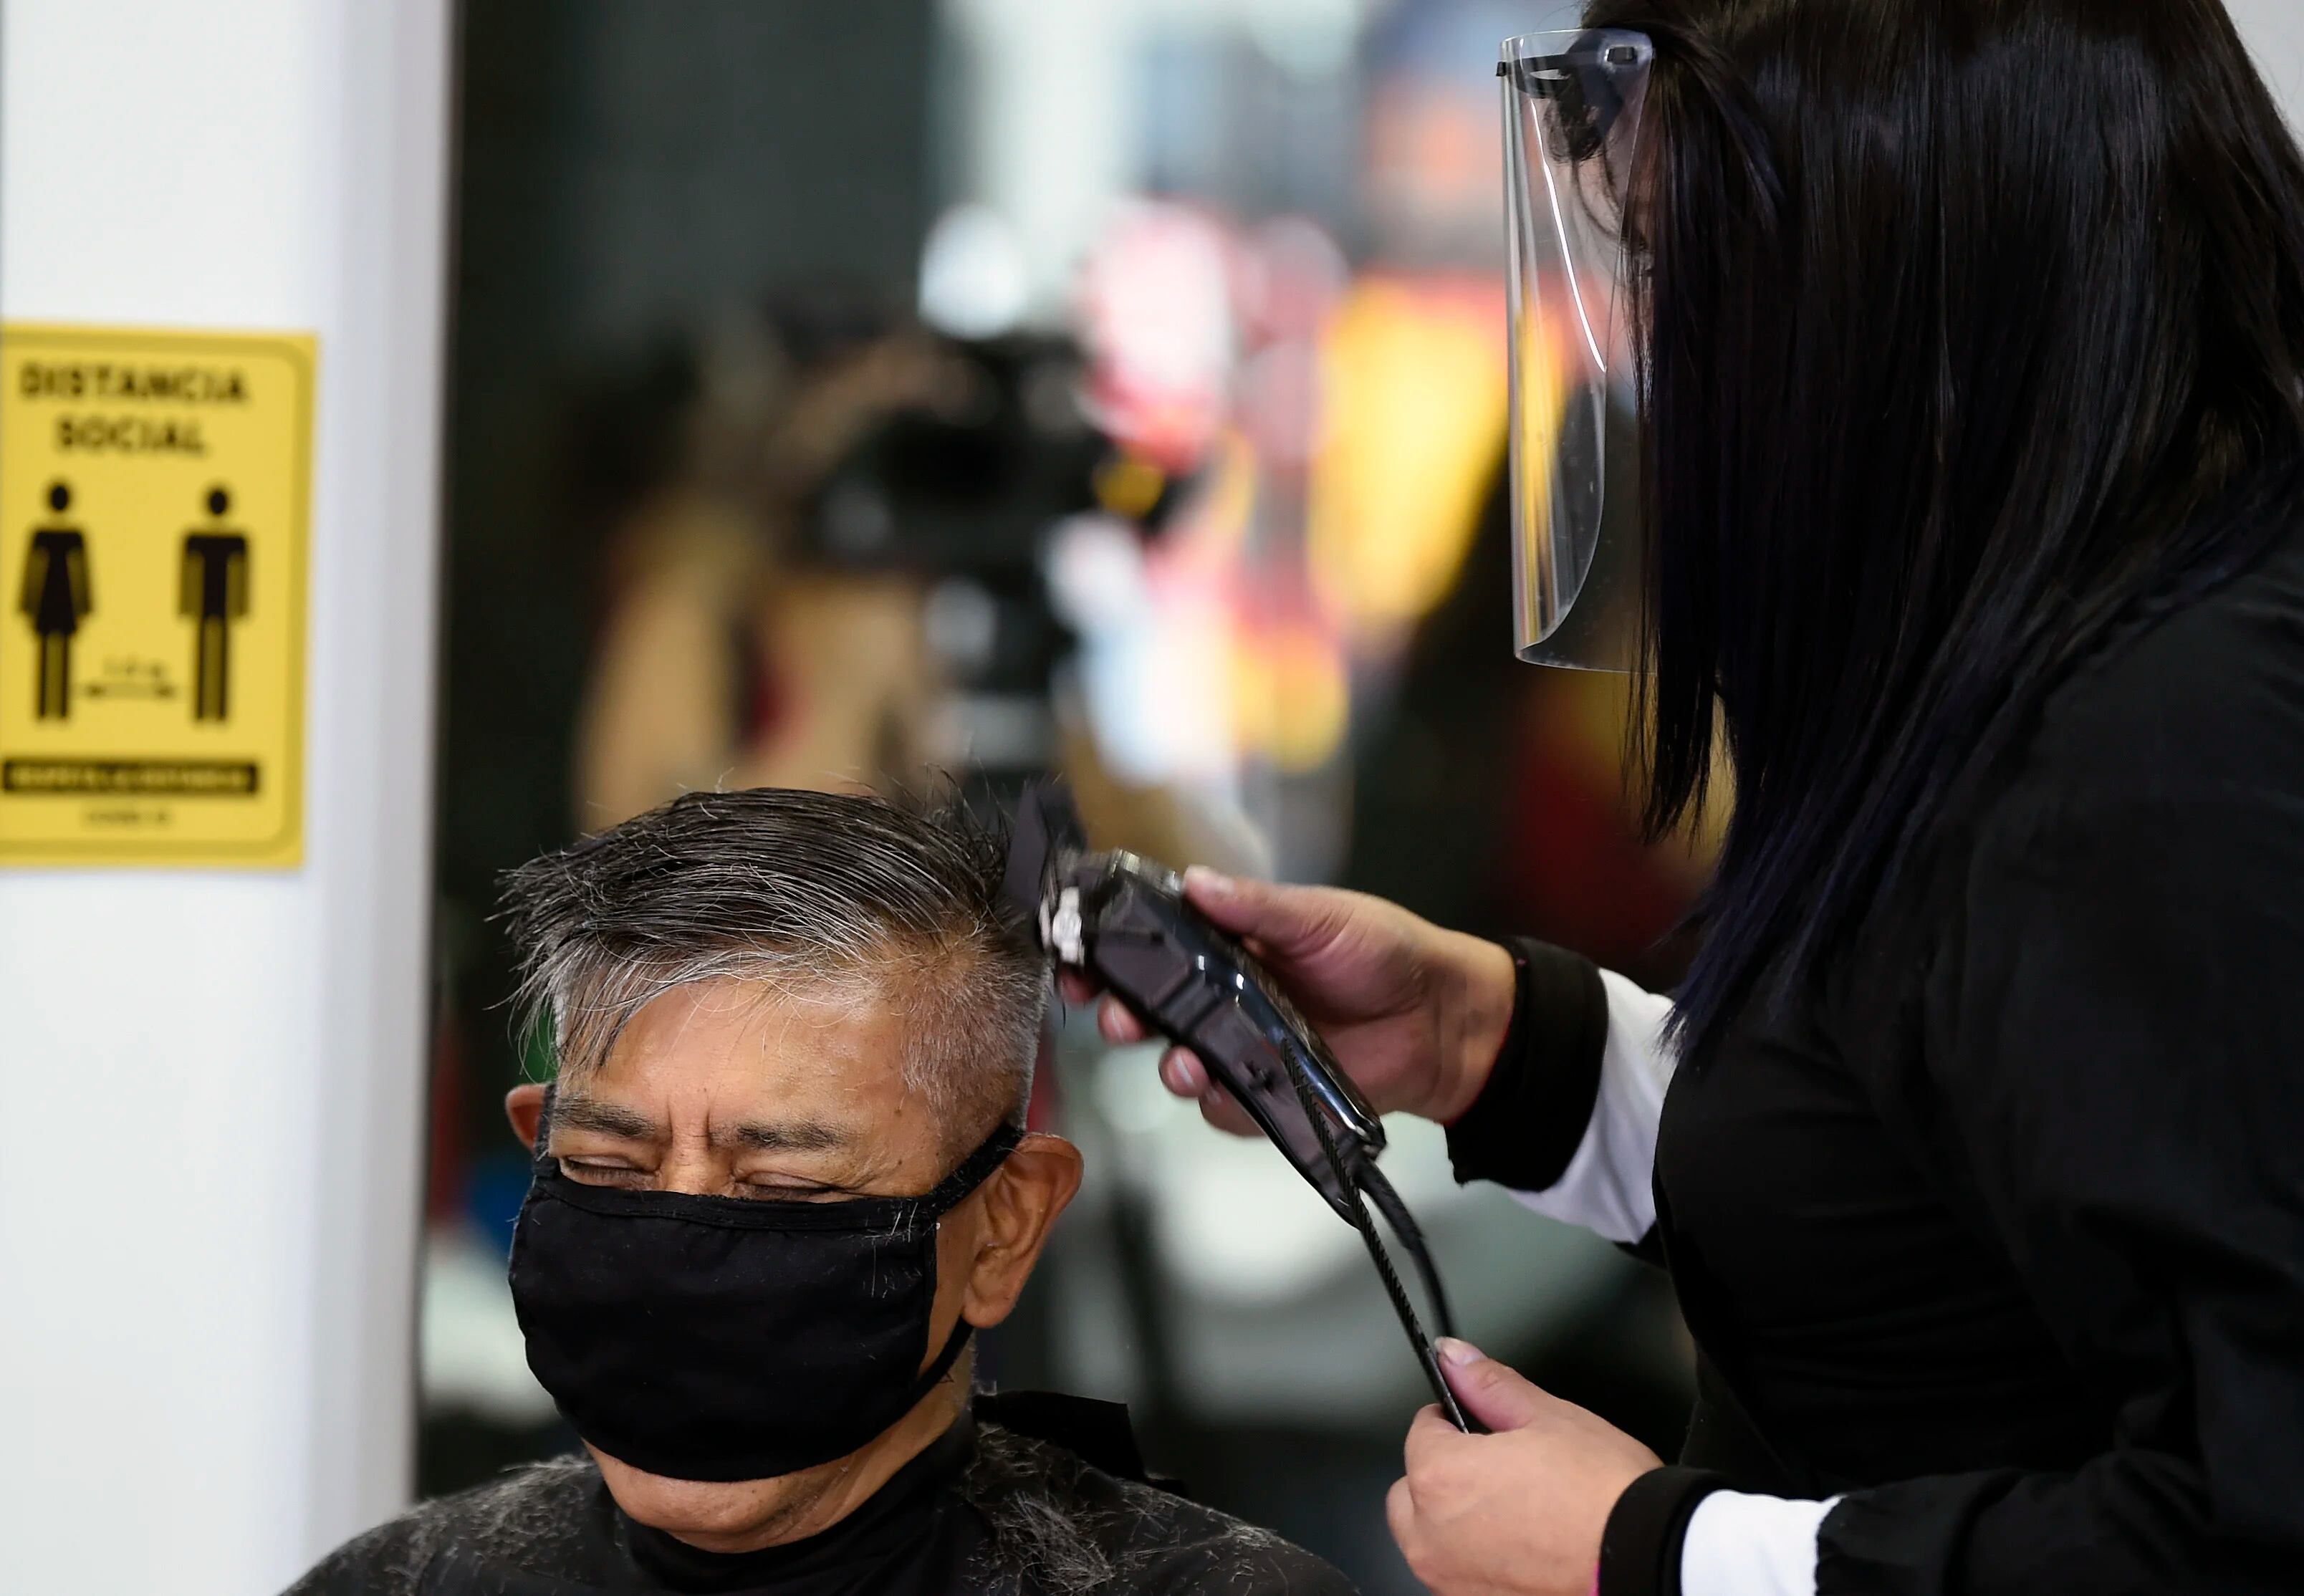 Un cliente se corta el pelo en un salón de belleza, durante la pandemia COVID-19, en la Ciudad de México el 29 de junio de 2020. (Foto: ALFREDO ESTRELLA / AFP)